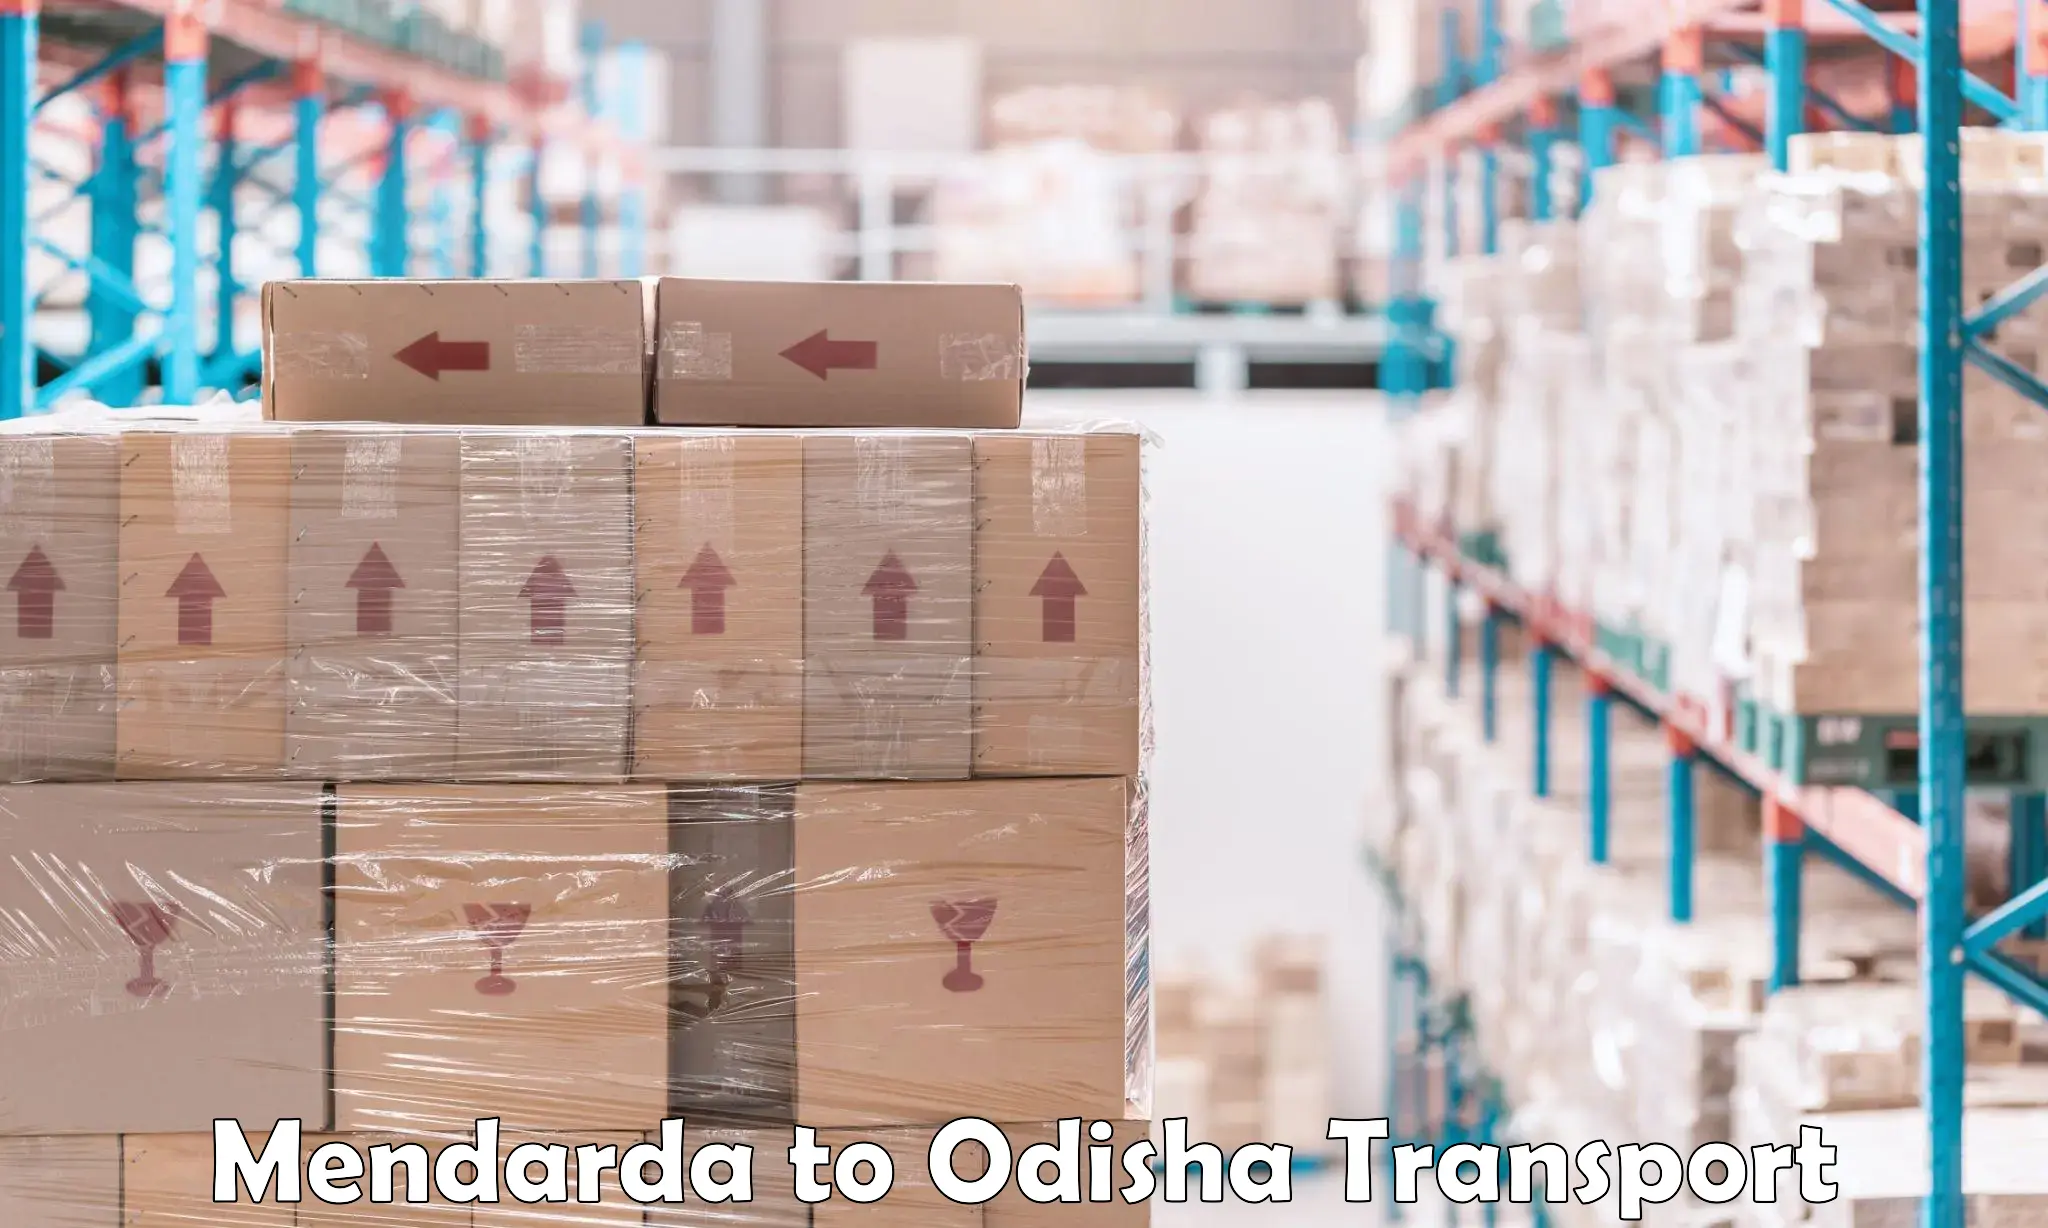 Container transport service Mendarda to Gunupur